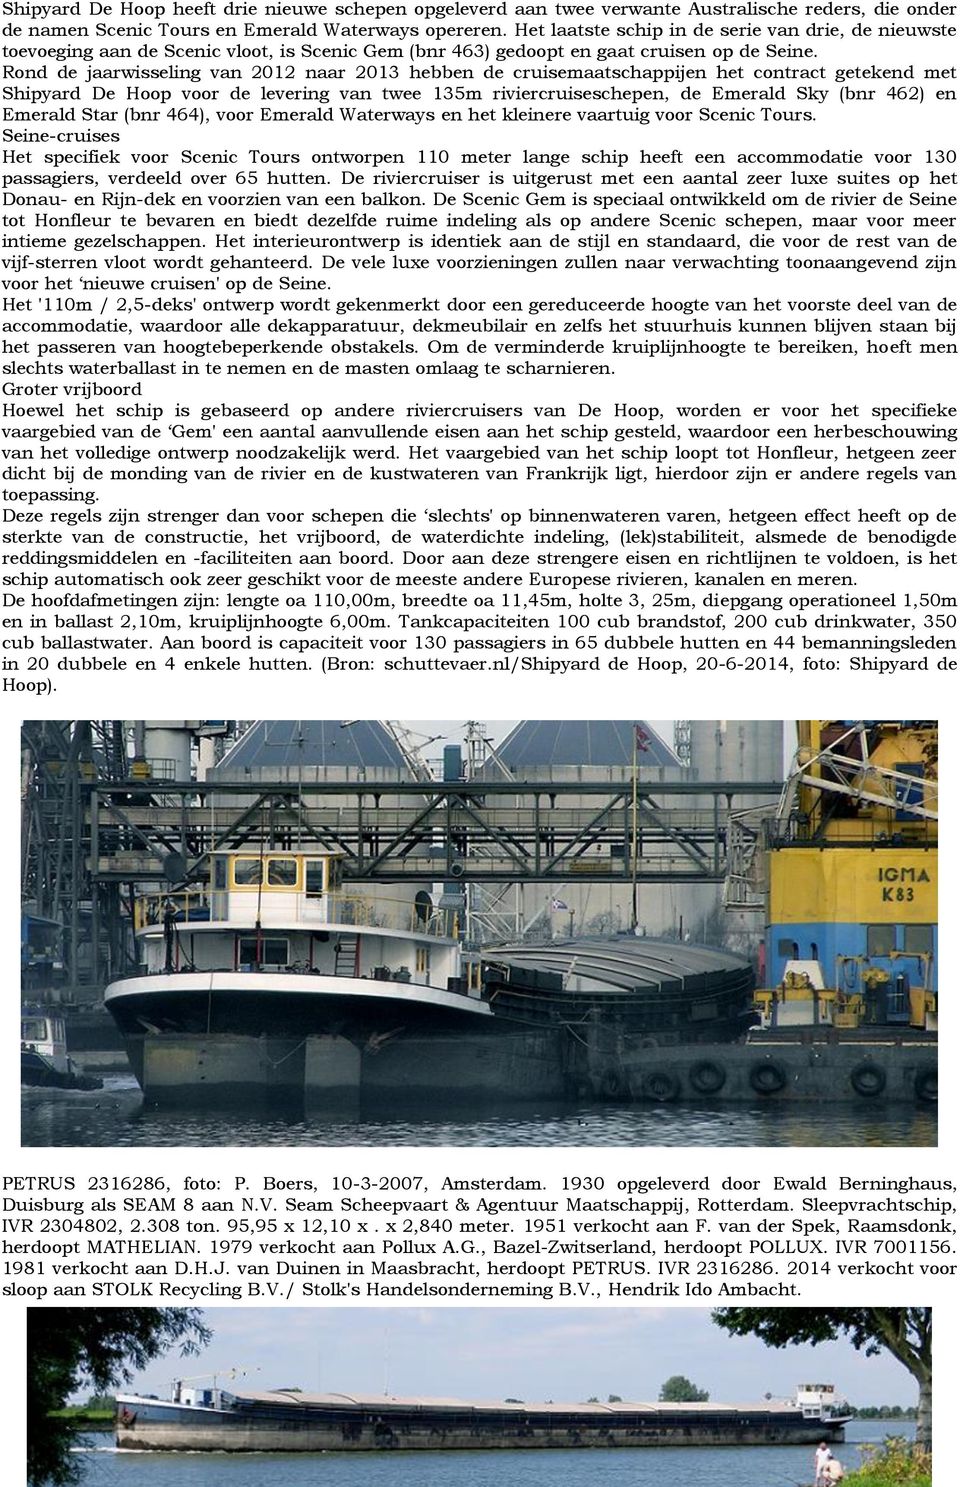 Rond de jaarwisseling van 2012 naar 2013 hebben de cruisemaatschappijen het contract getekend met Shipyard De Hoop voor de levering van twee 135m riviercruiseschepen, de Emerald Sky (bnr 462) en